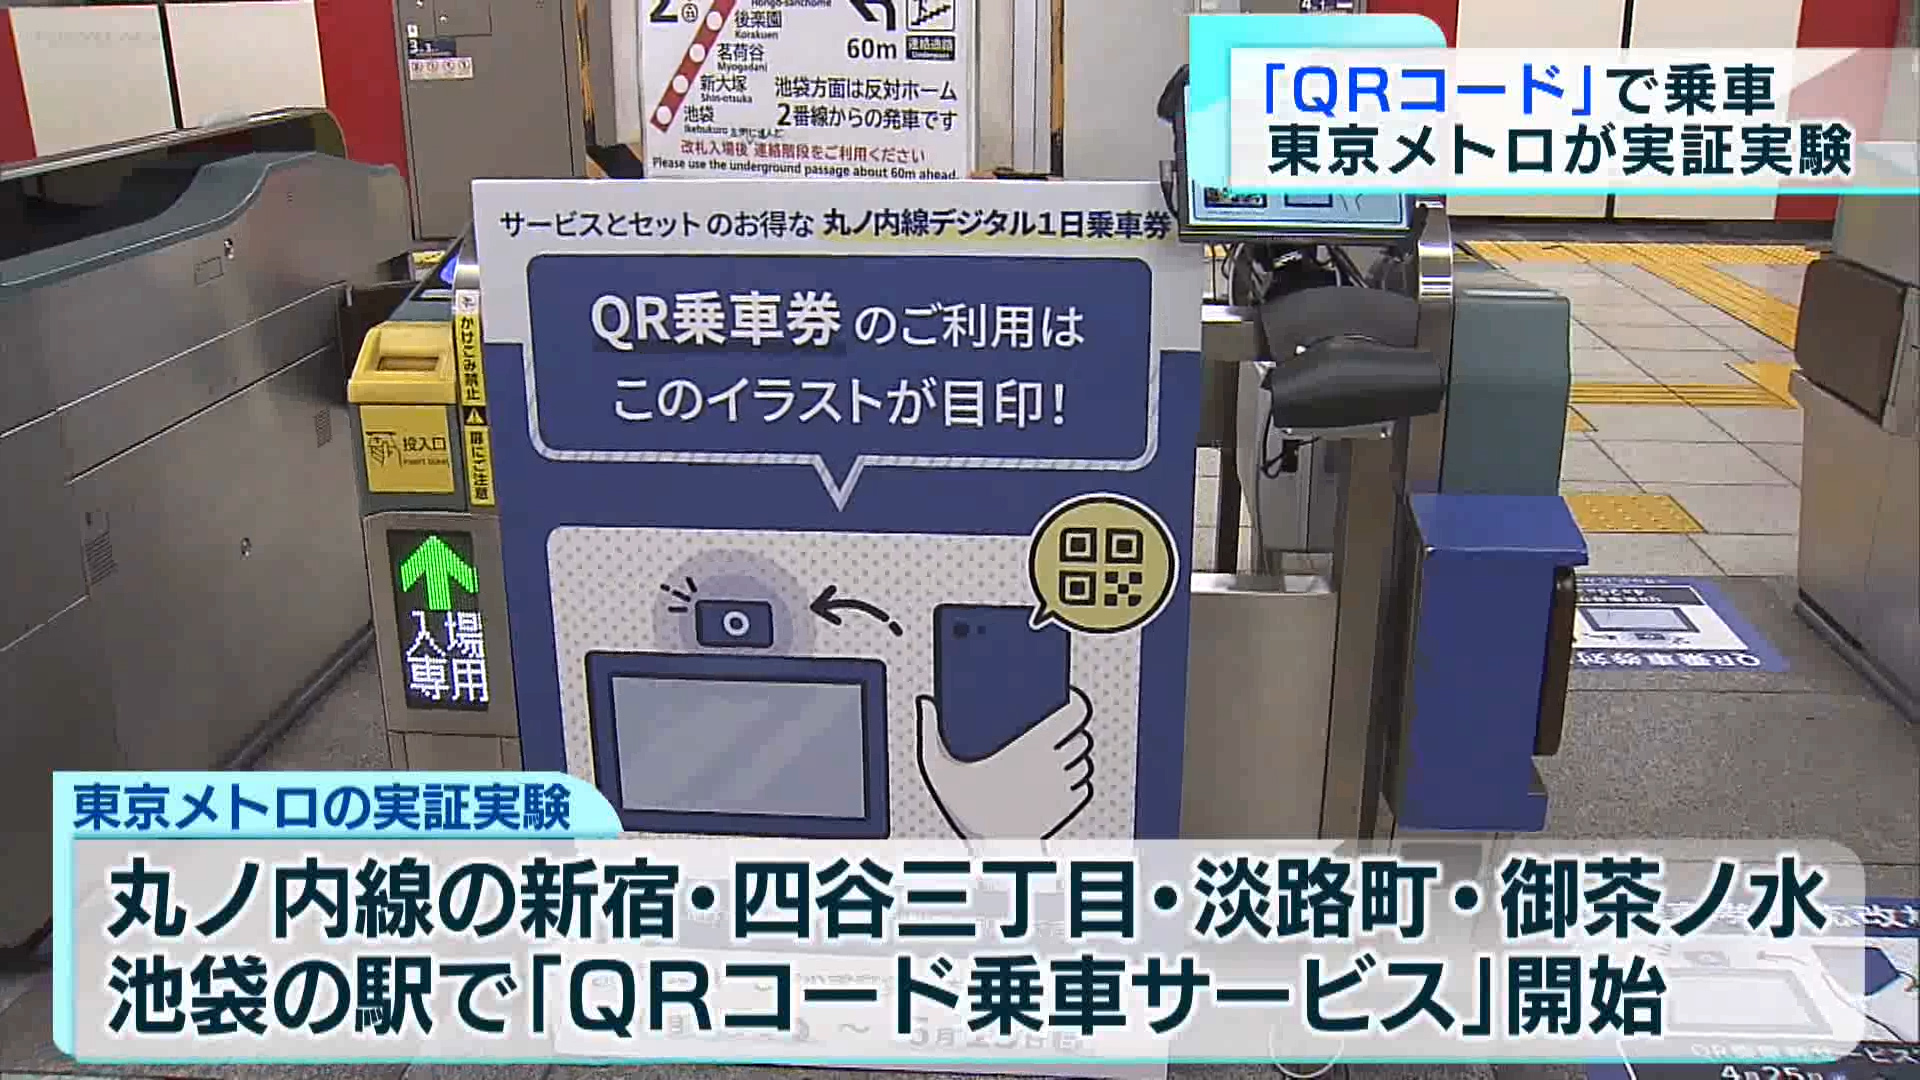 東京メトロは4月25日から丸の内線の一部の駅で、QRコードを利用した乗車サービスの実証実験を始めました。